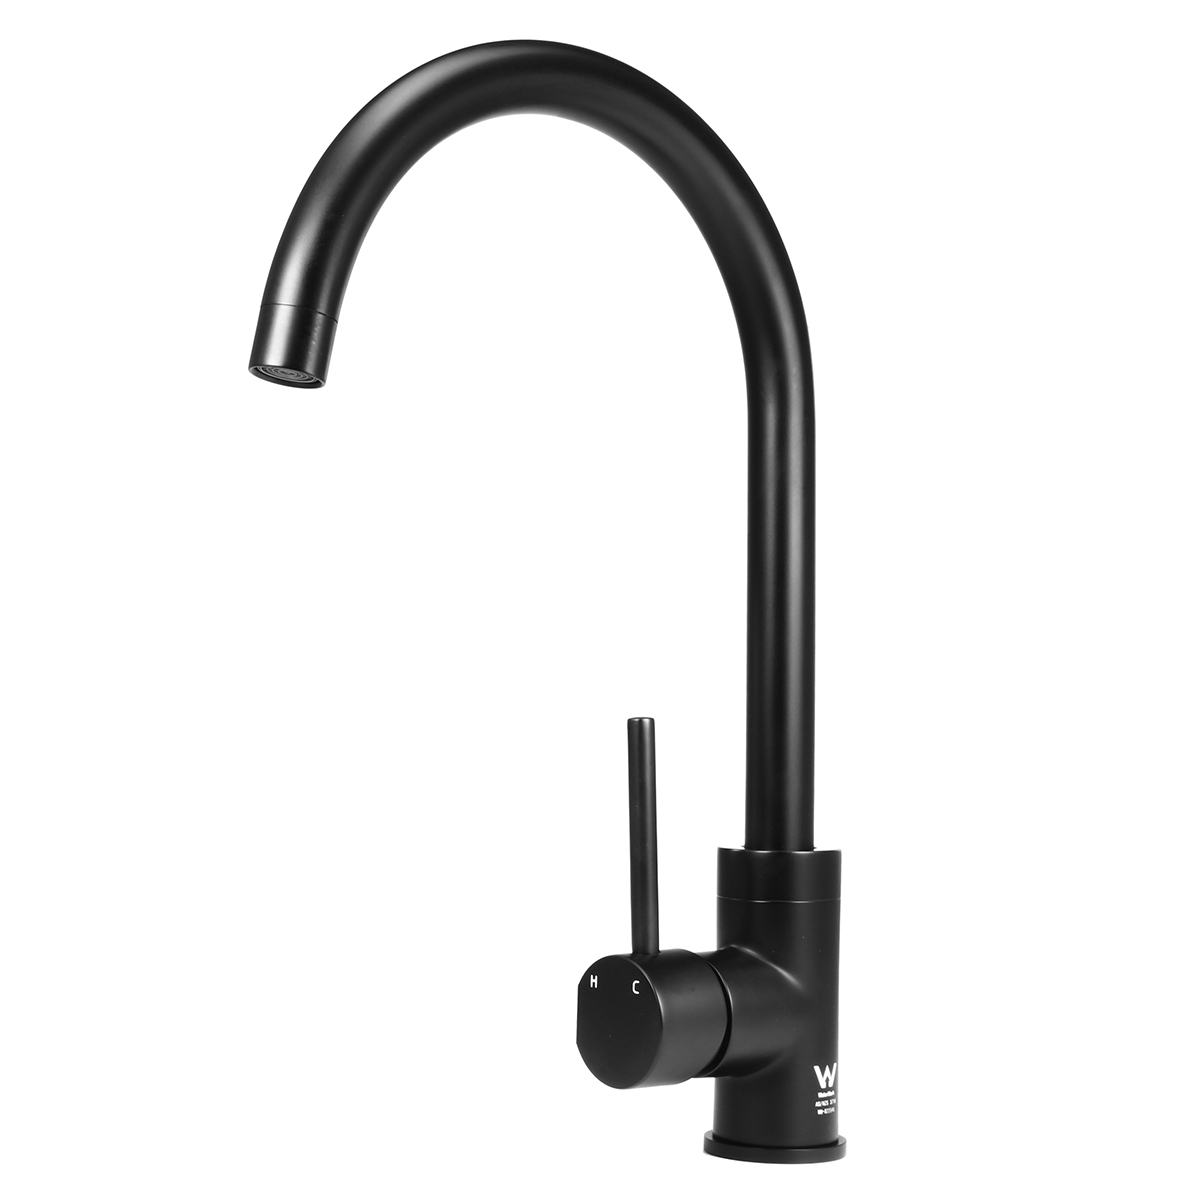 

Matt Black Mixer Tap Bath Shower Spout Faucet for Kitchen Basin Sink Vanity Cold Hot